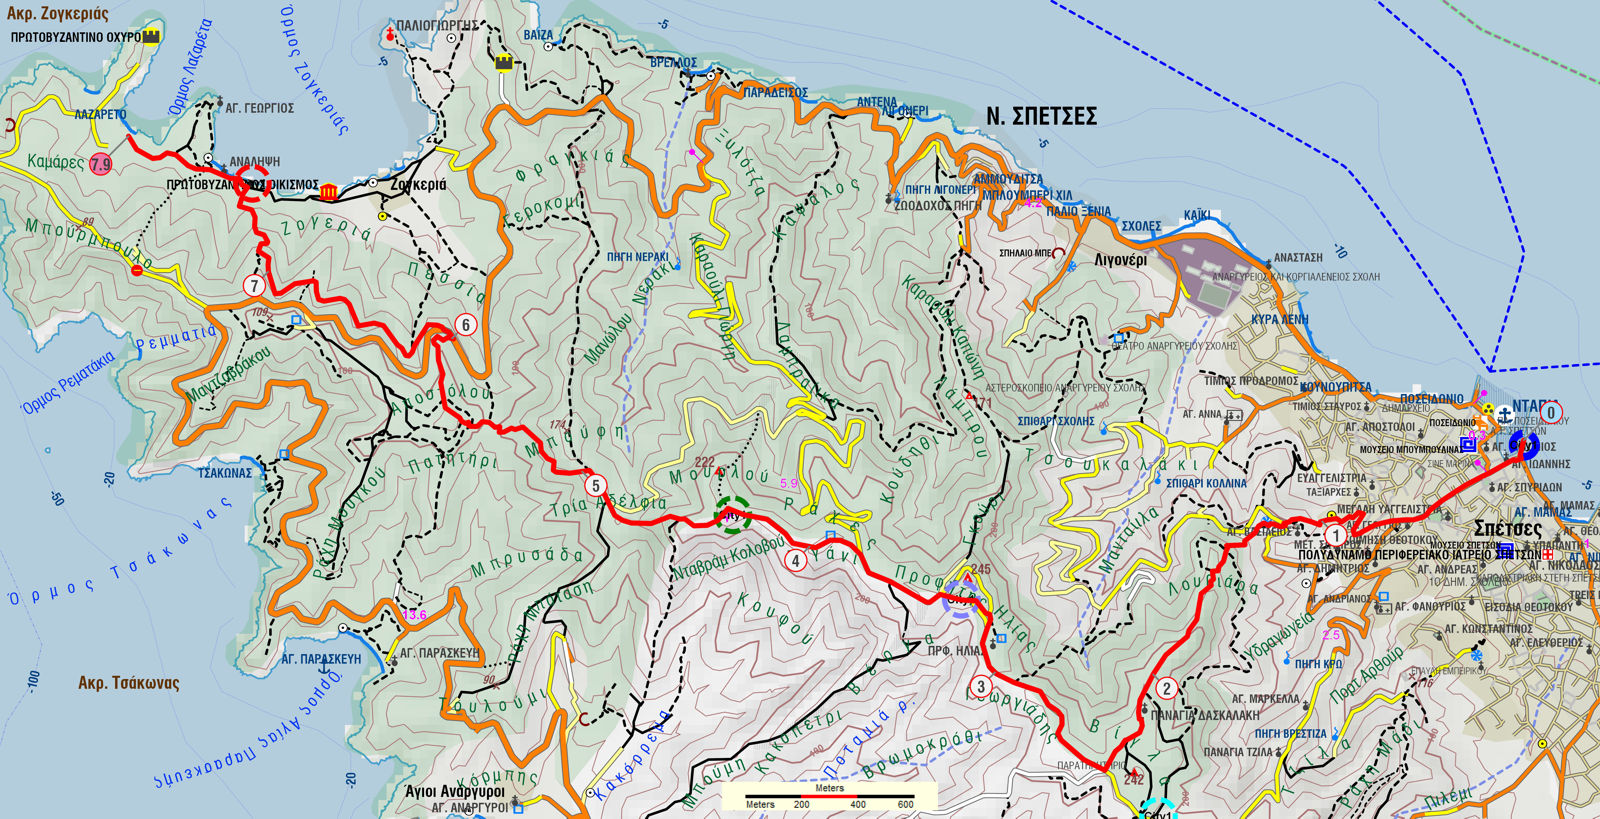 Σπέτσες: Χάρτης της διαδρομής Ντάπια-Ζογεριά από την κορυφογραμμή